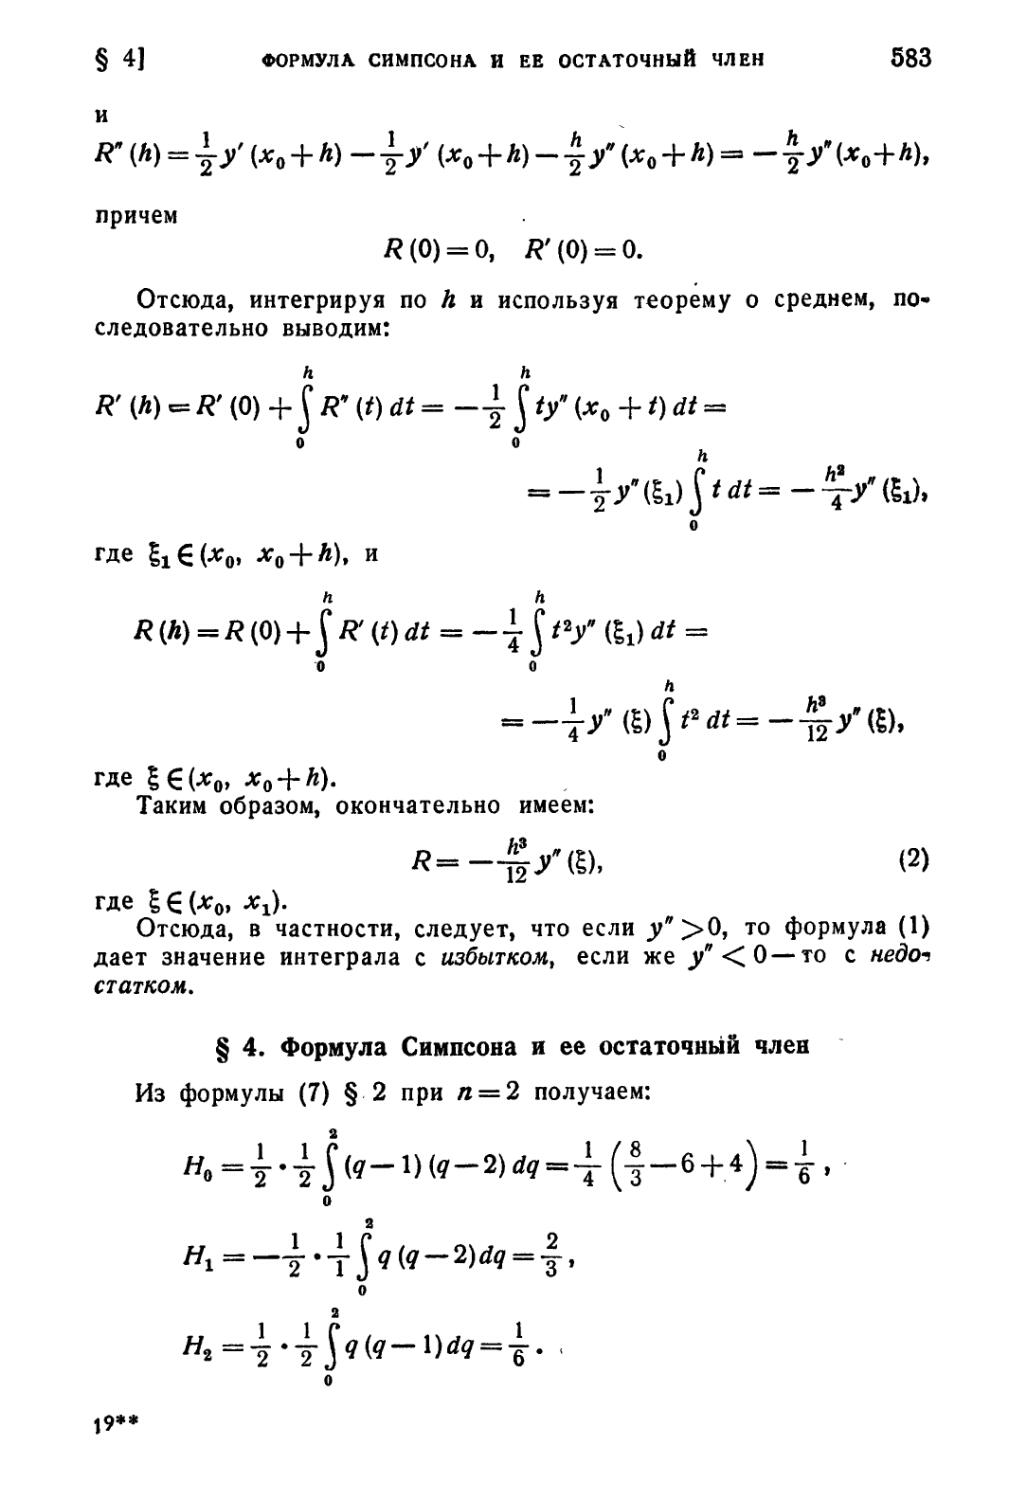 § 4. Формула Симпсона и ее остаточный член